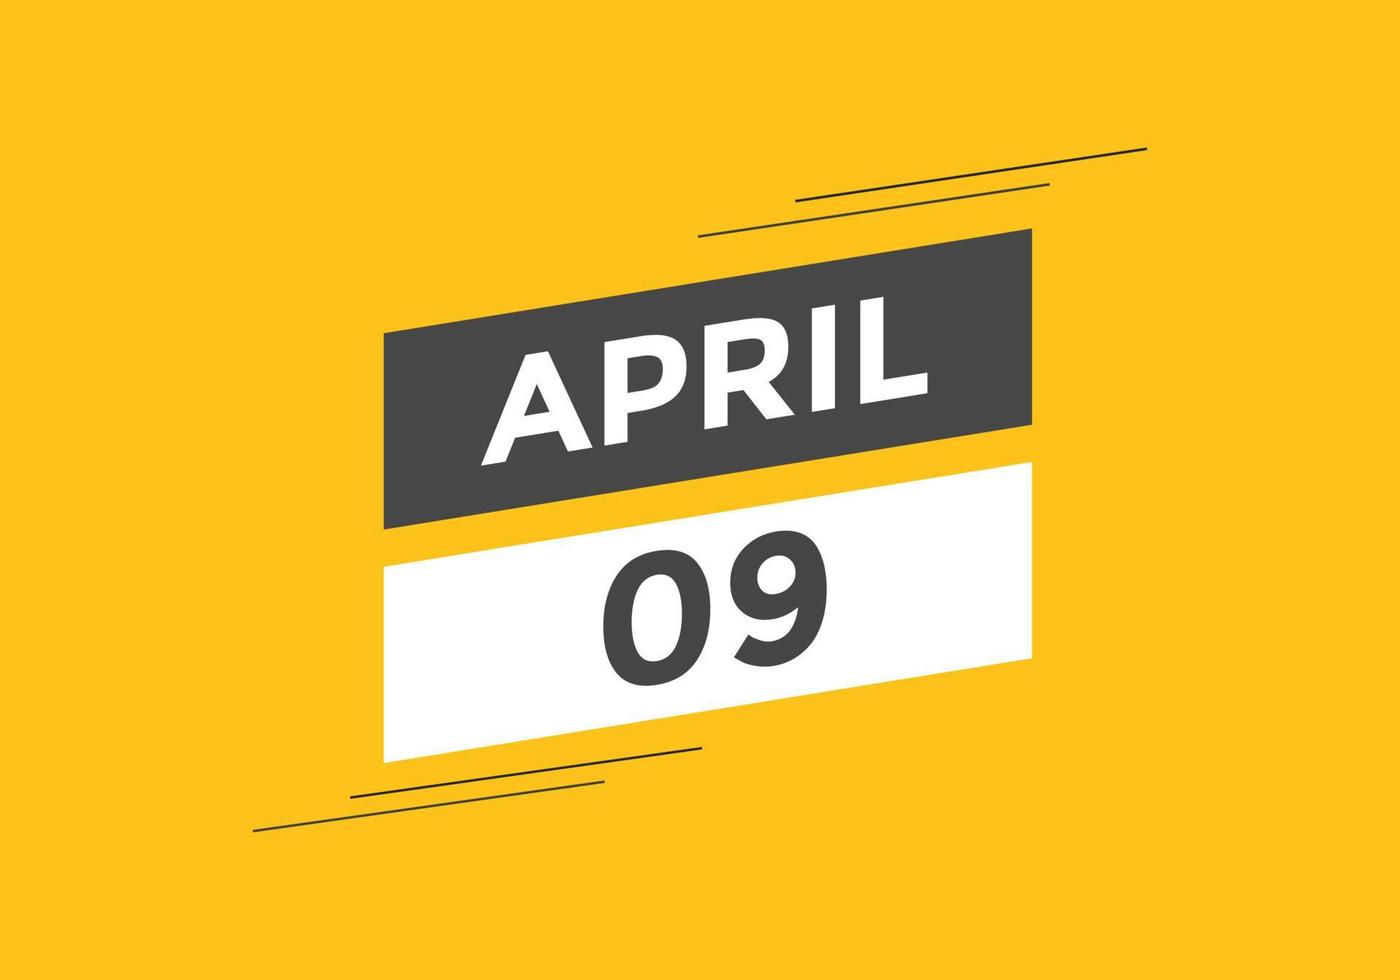 aprile 9 calendario promemoria. 9 ° aprile quotidiano calendario icona modello. calendario 9 ° aprile icona design modello. vettore illustrazione